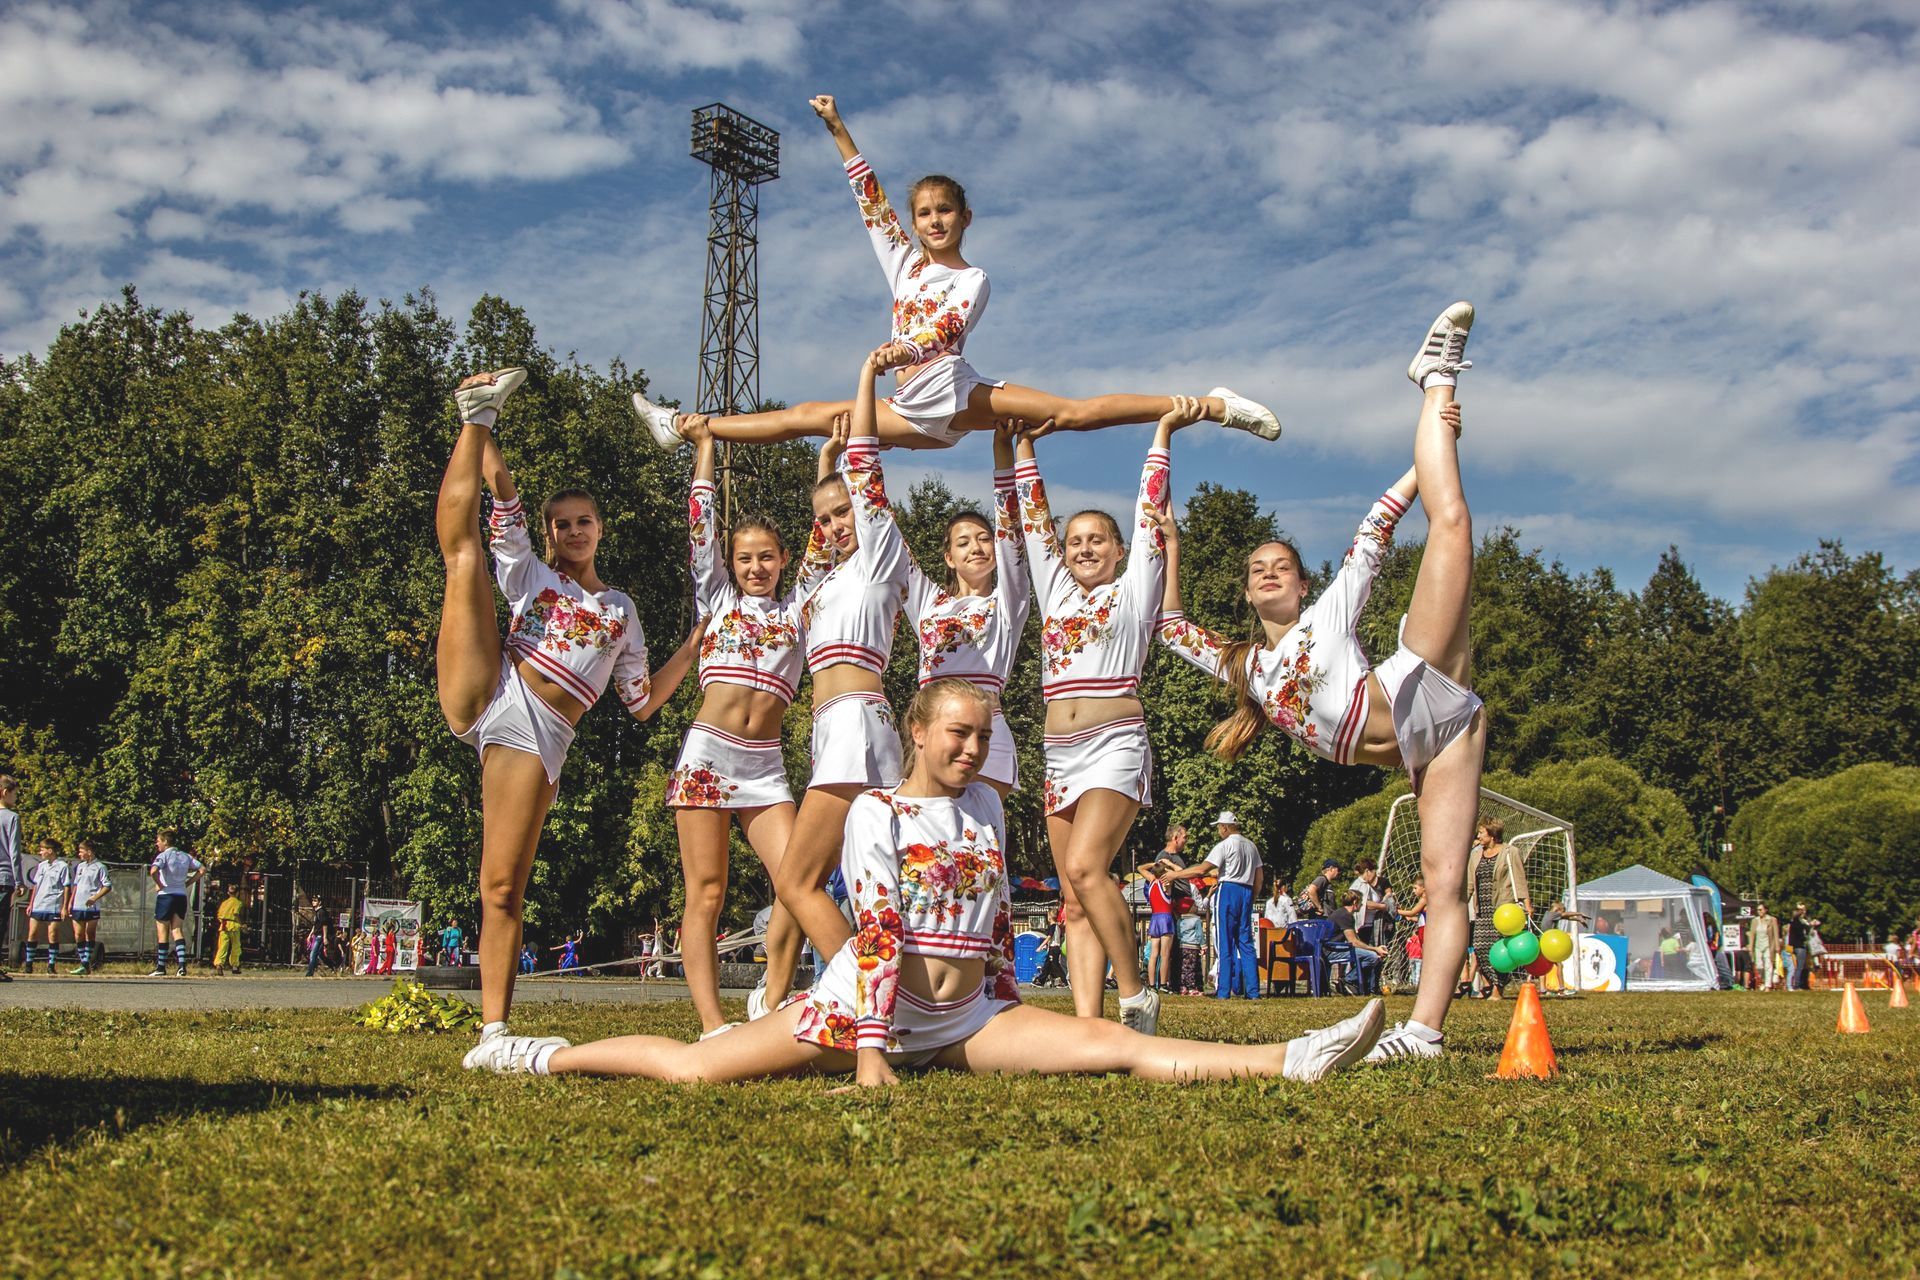 Schüleraustausch USA Switch You Cheerleader in Pose auf Spielfeld